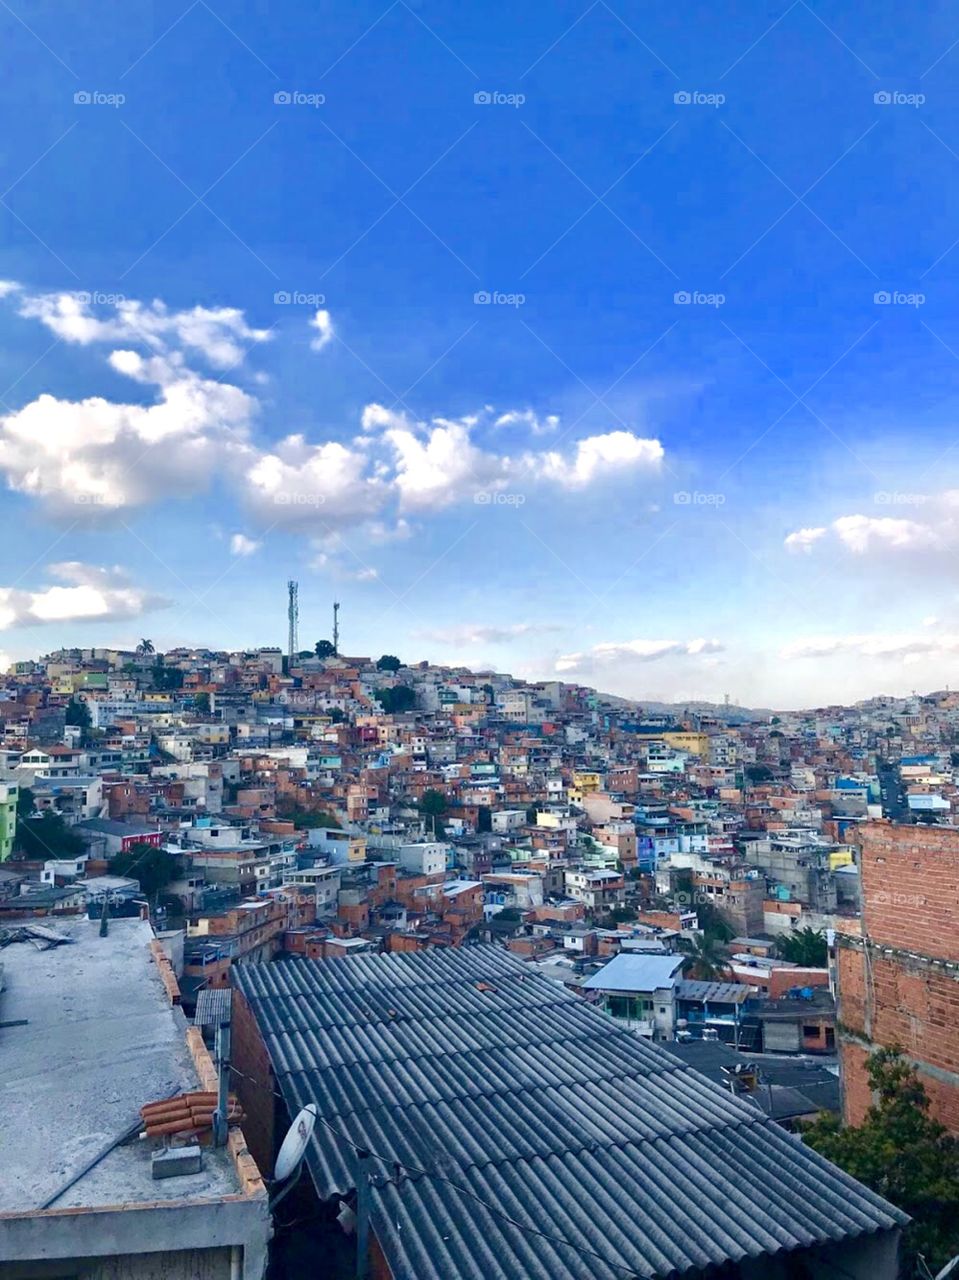 Favela de São Paulo